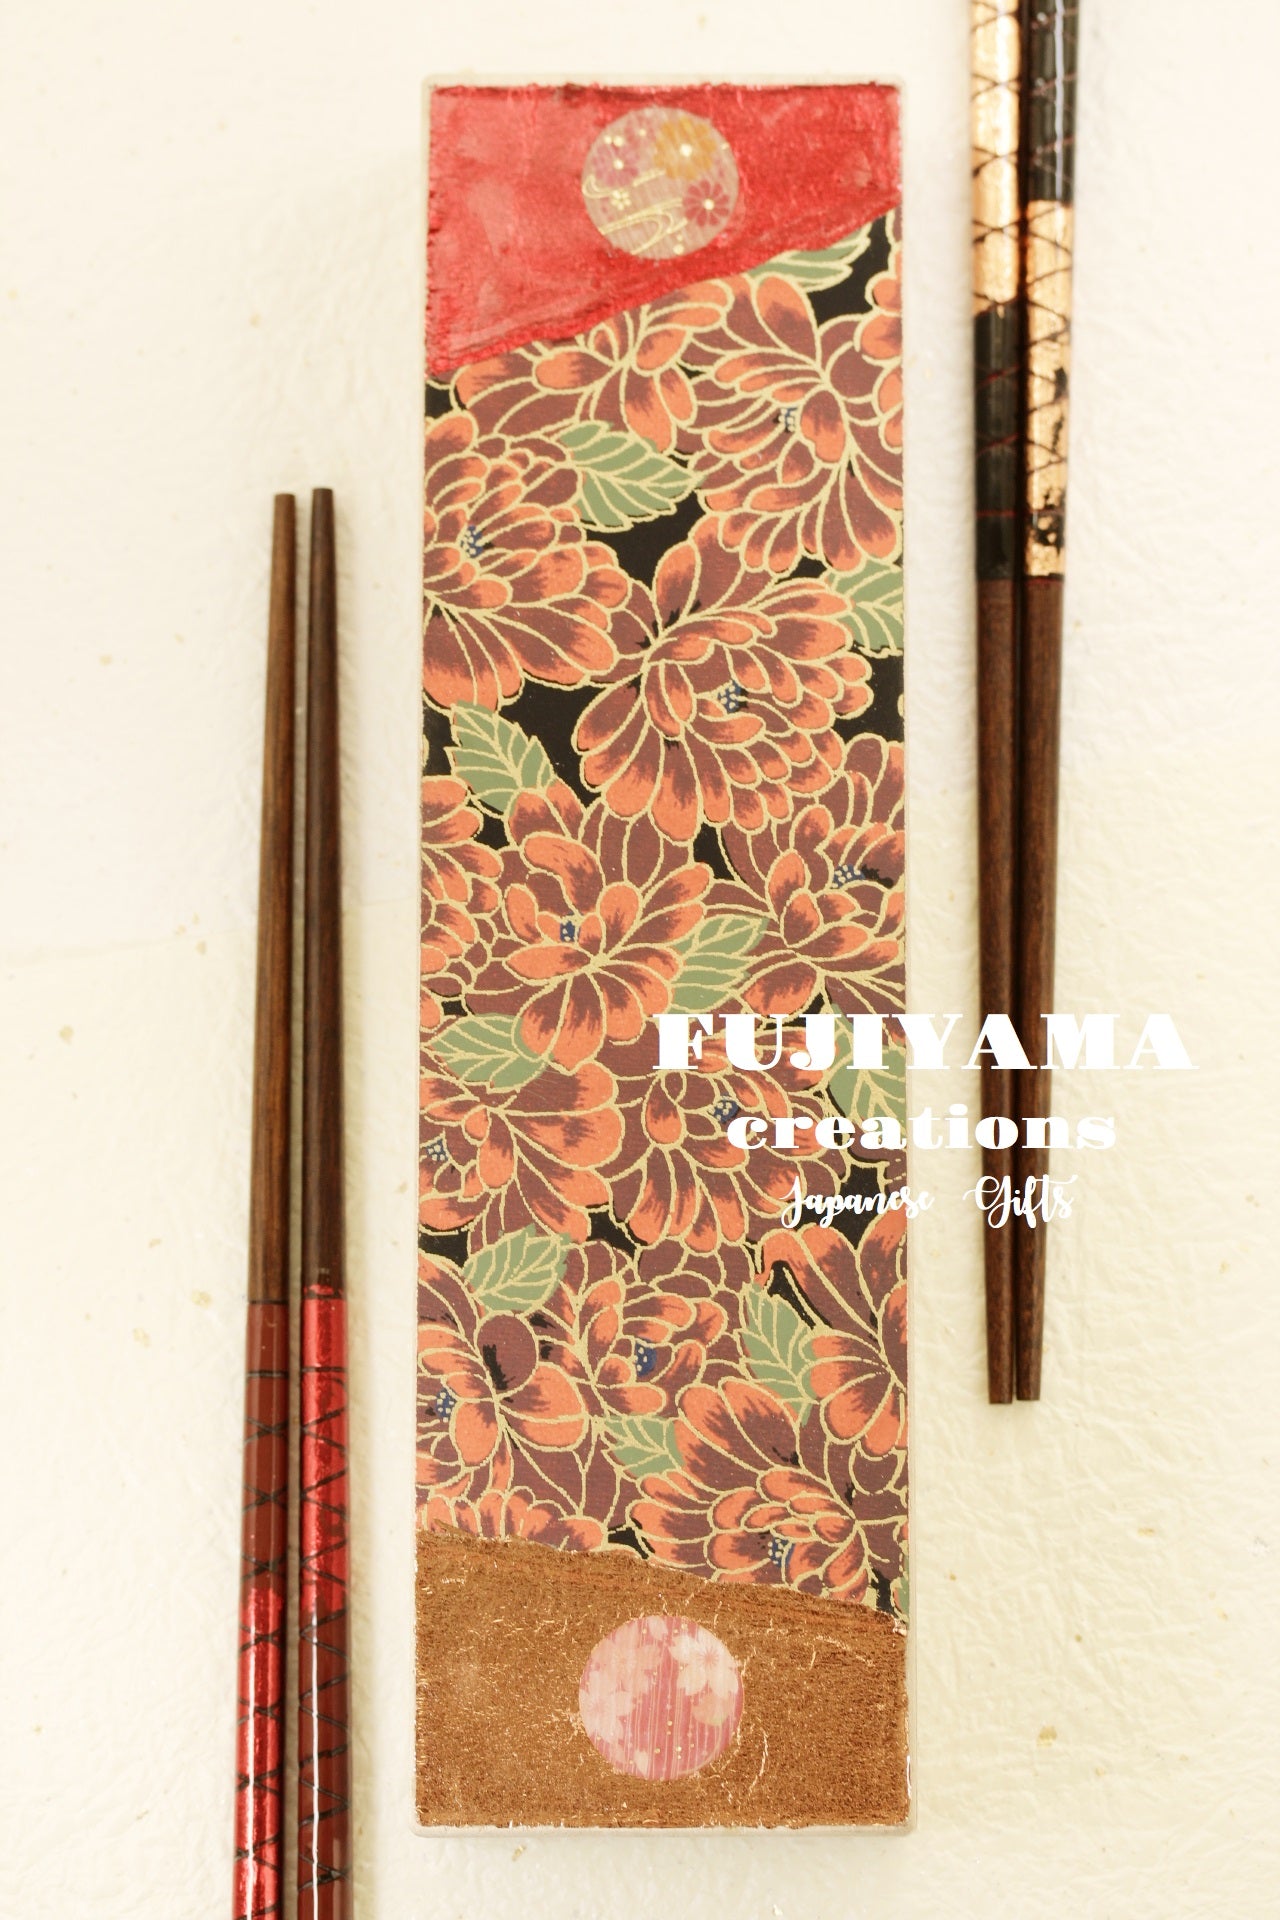 Chopsticks – Kikuike Handmade Studio